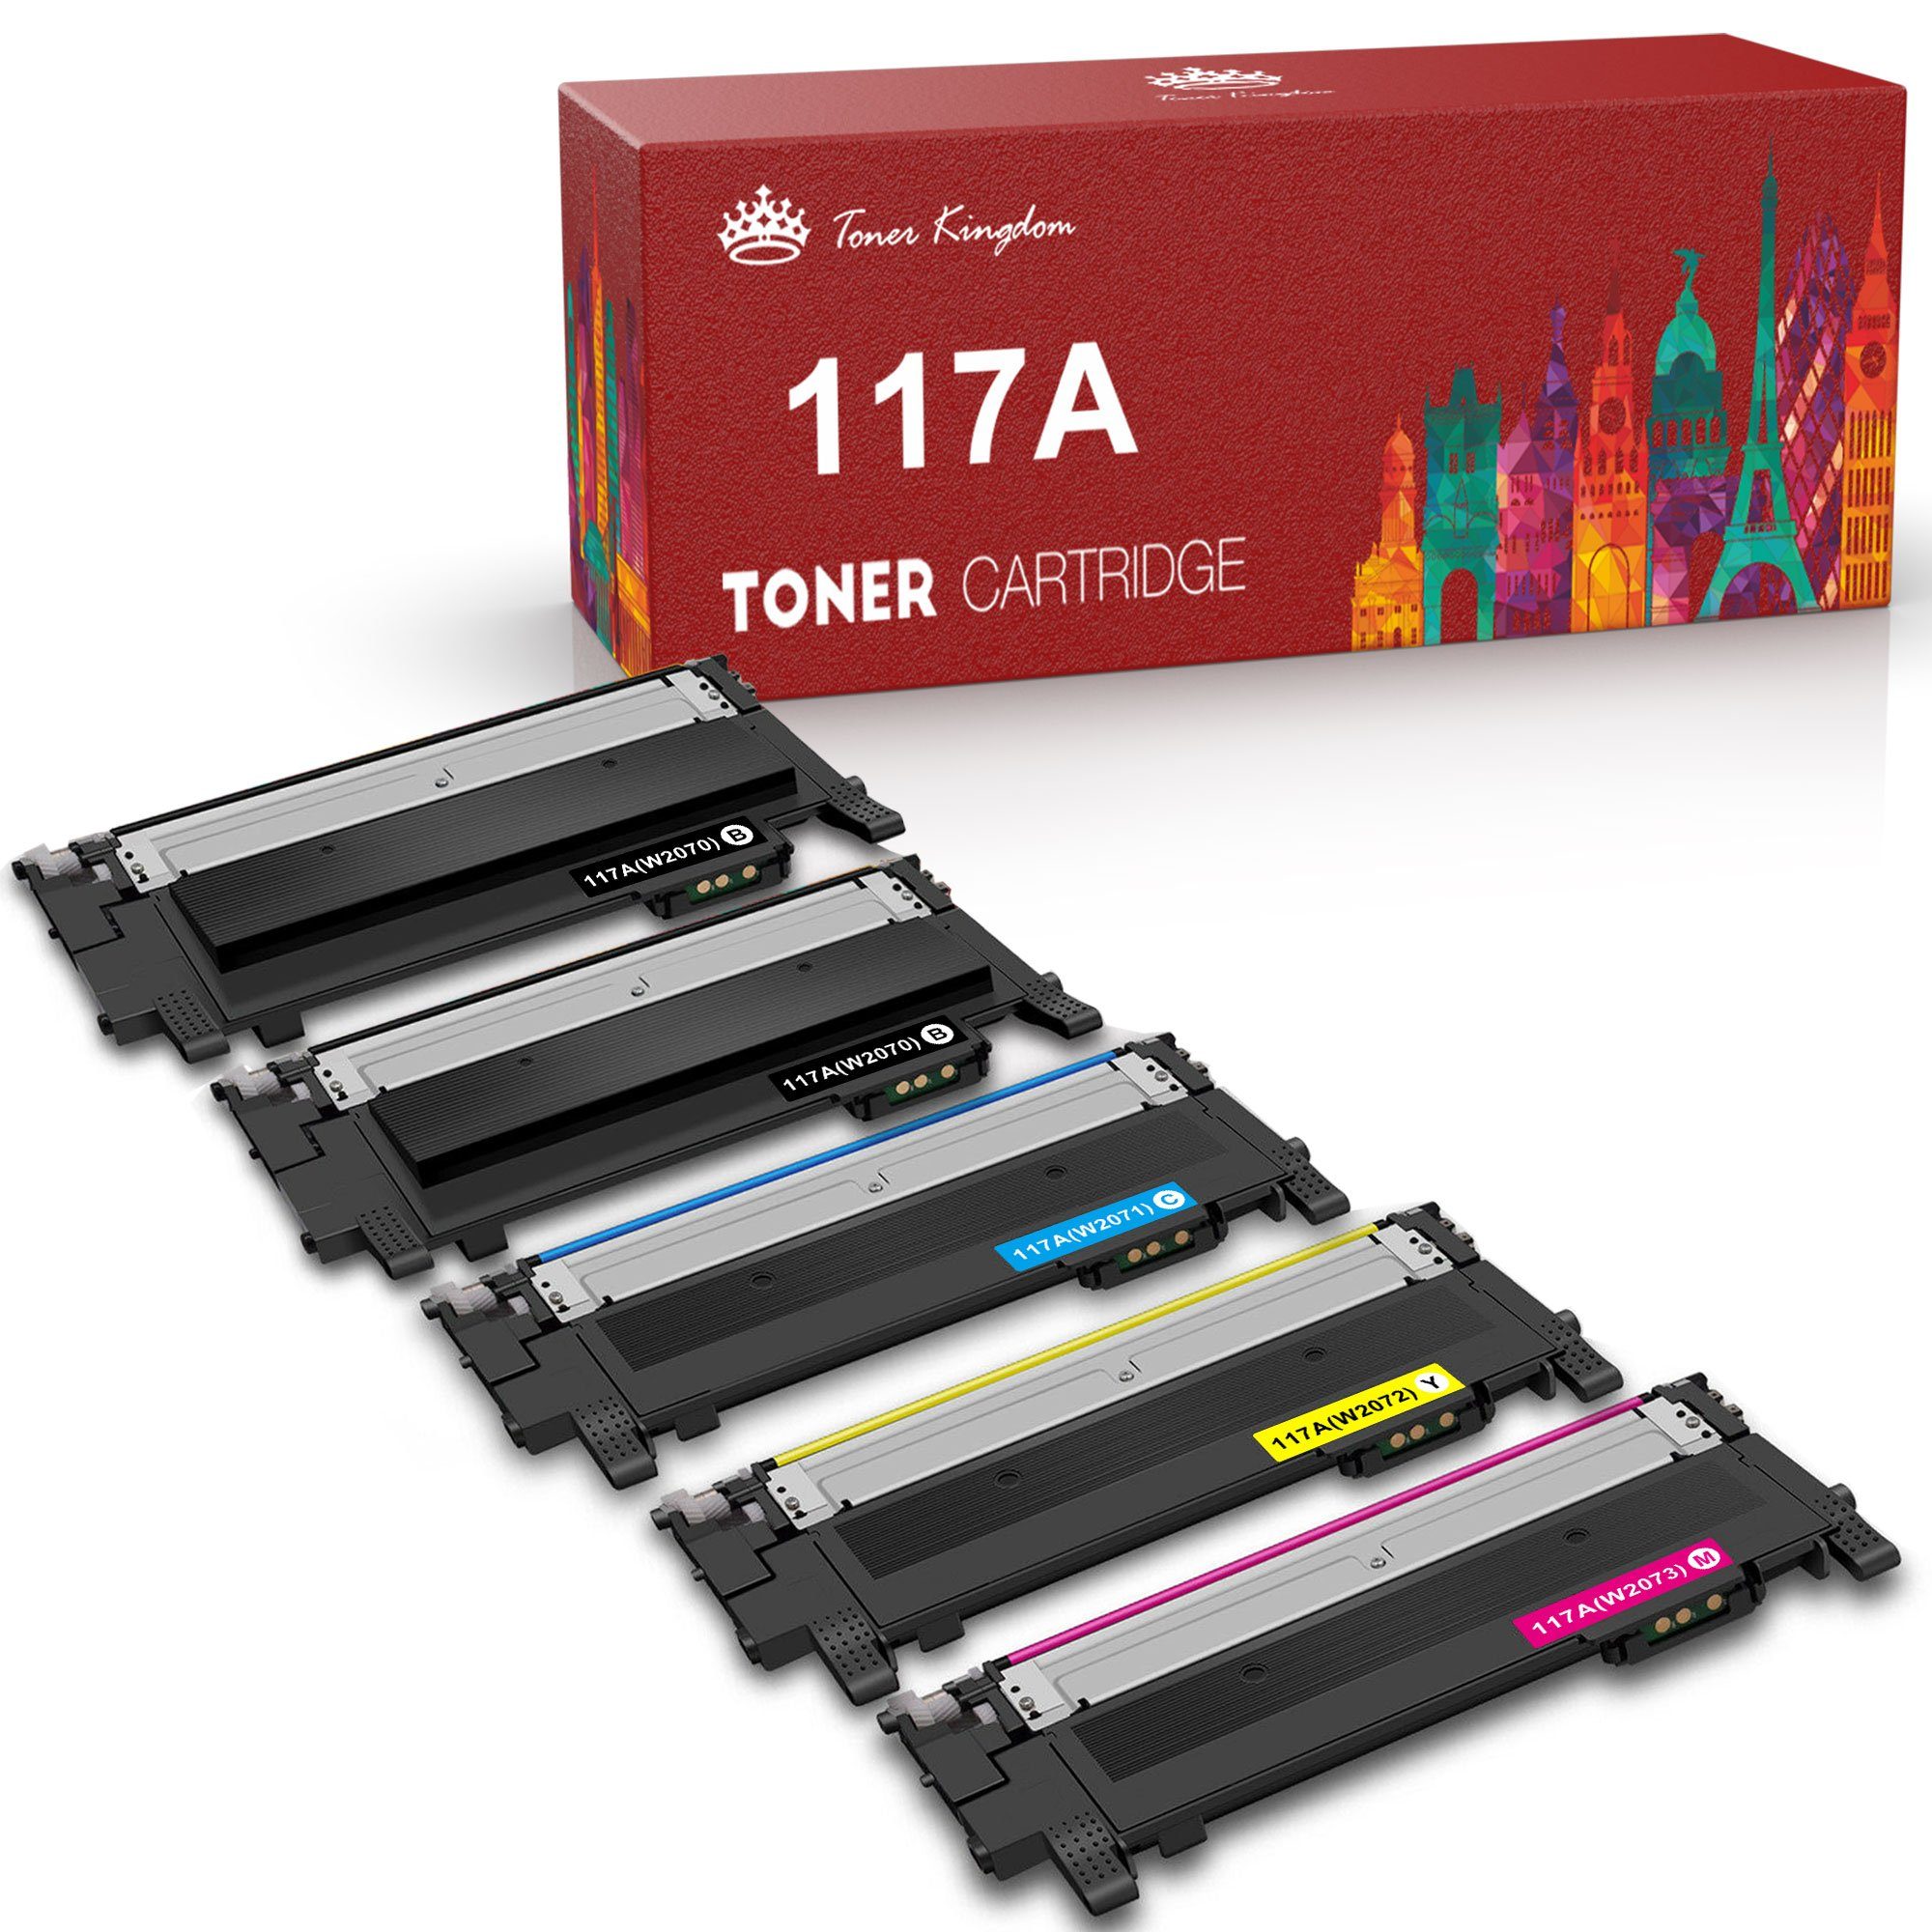 Toner Kingdom Tonerpatrone Ersatz für HP 117A 4er-pack mit Chip, Kompatibel  für HP Color Laser MFP-178nwg